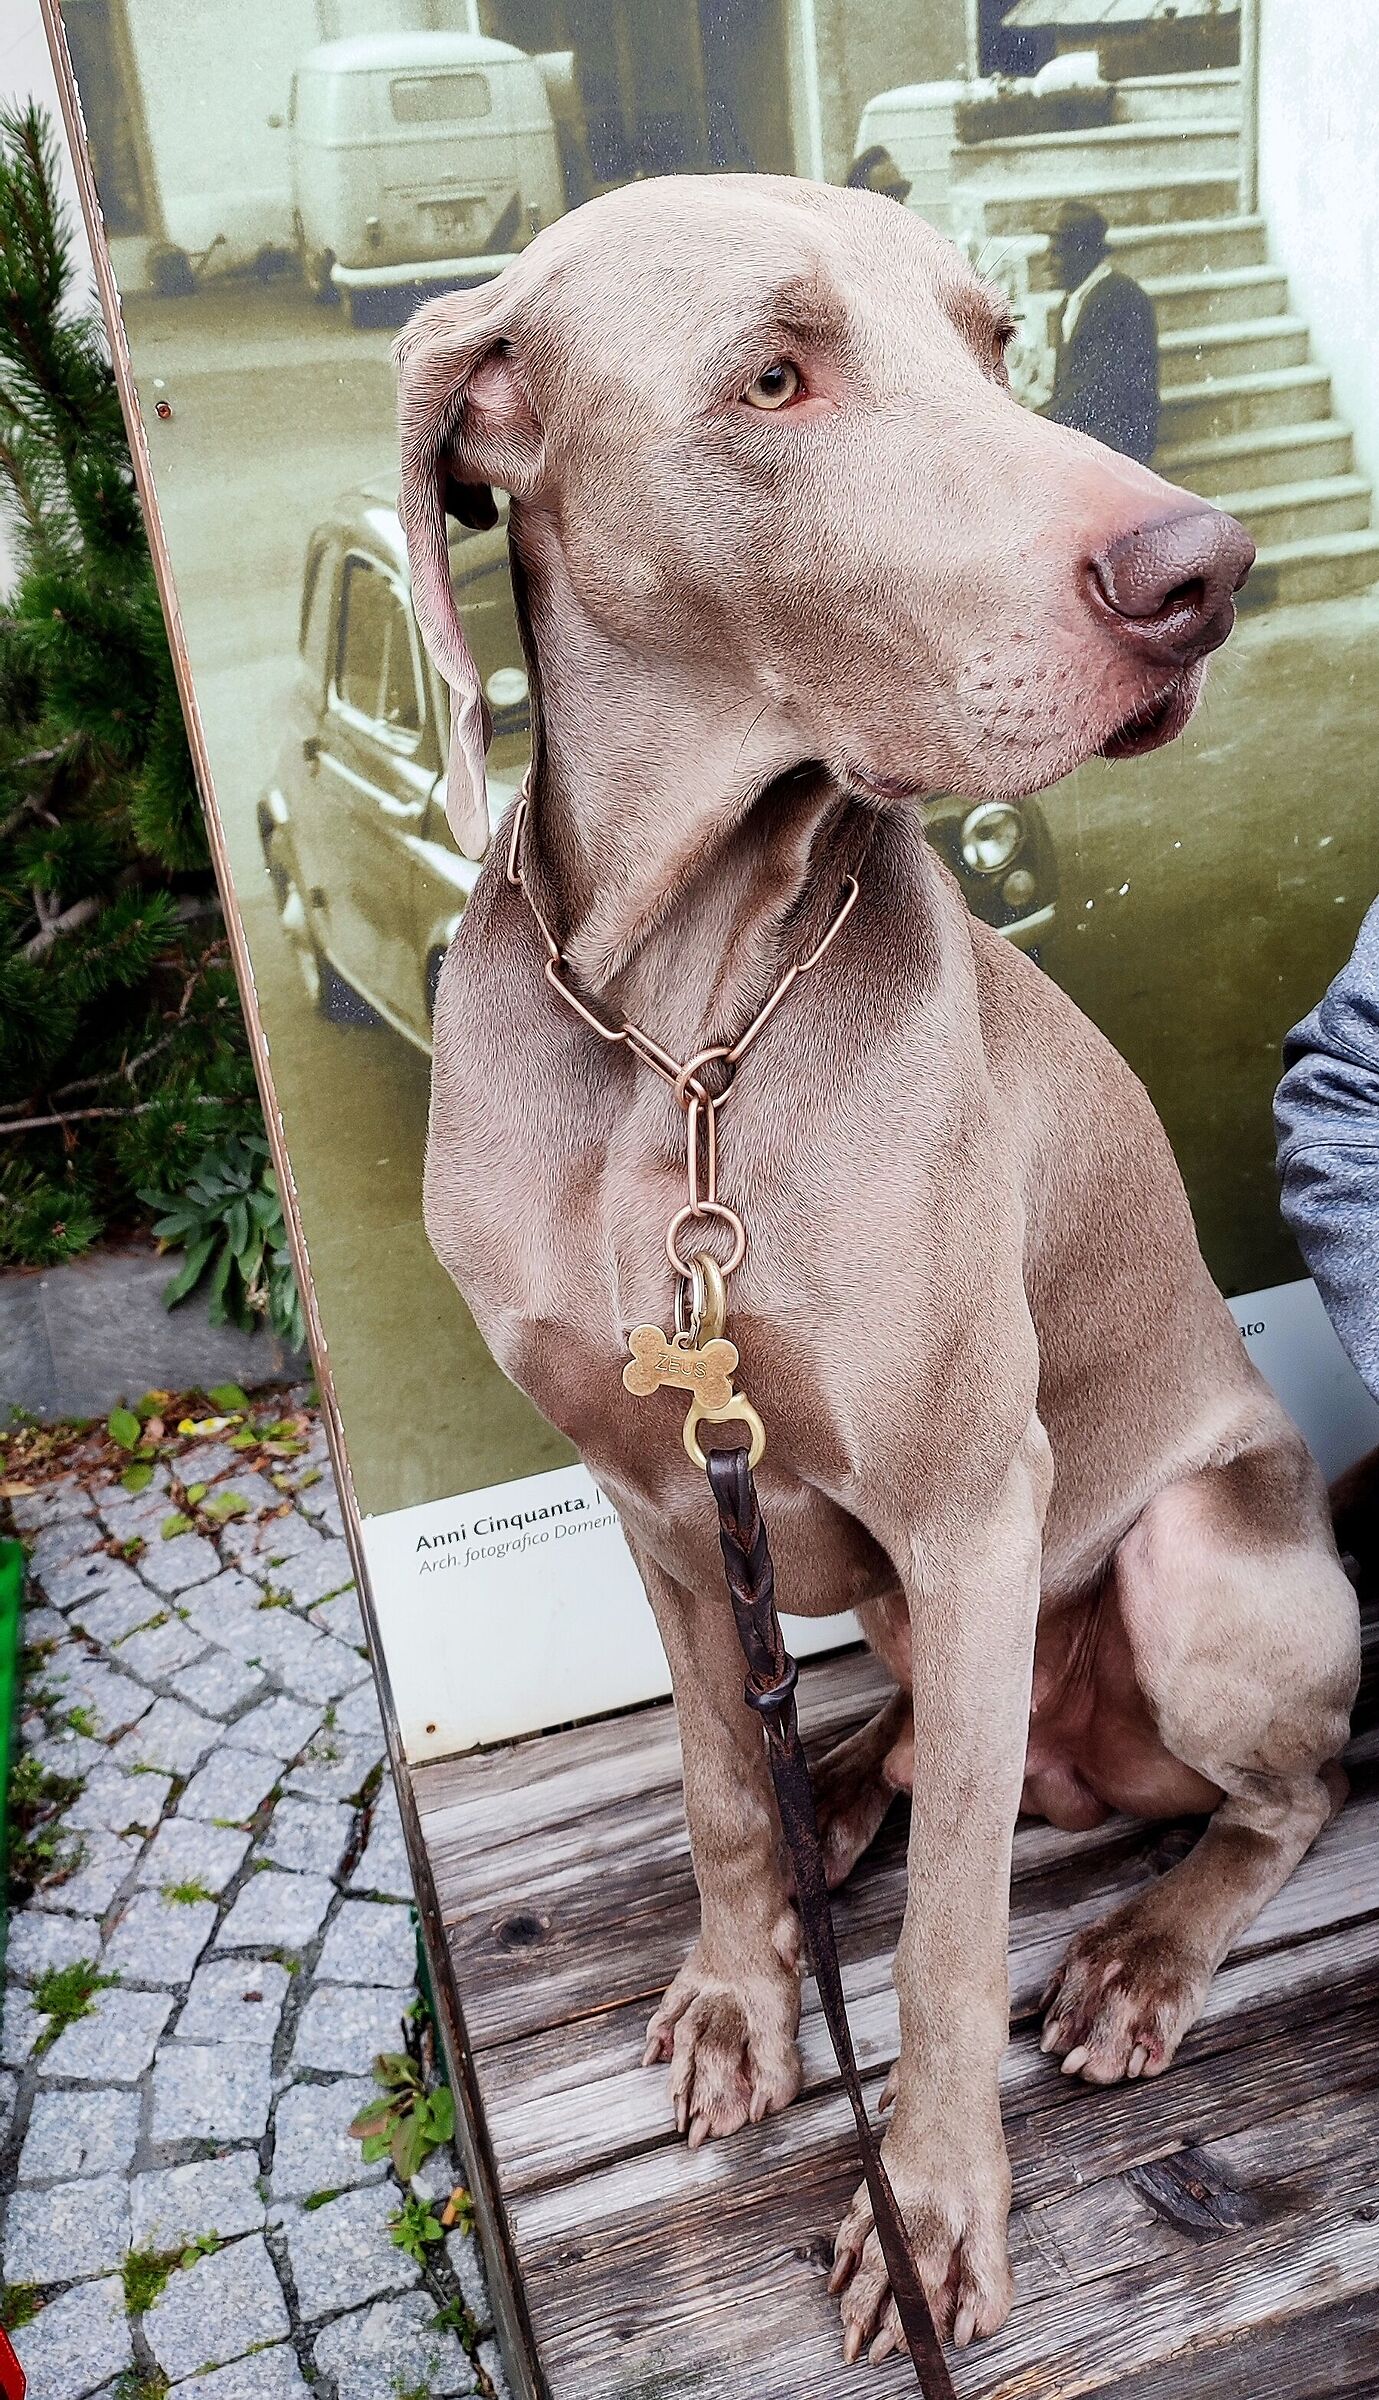 Zeus (Weimaraner breed)...